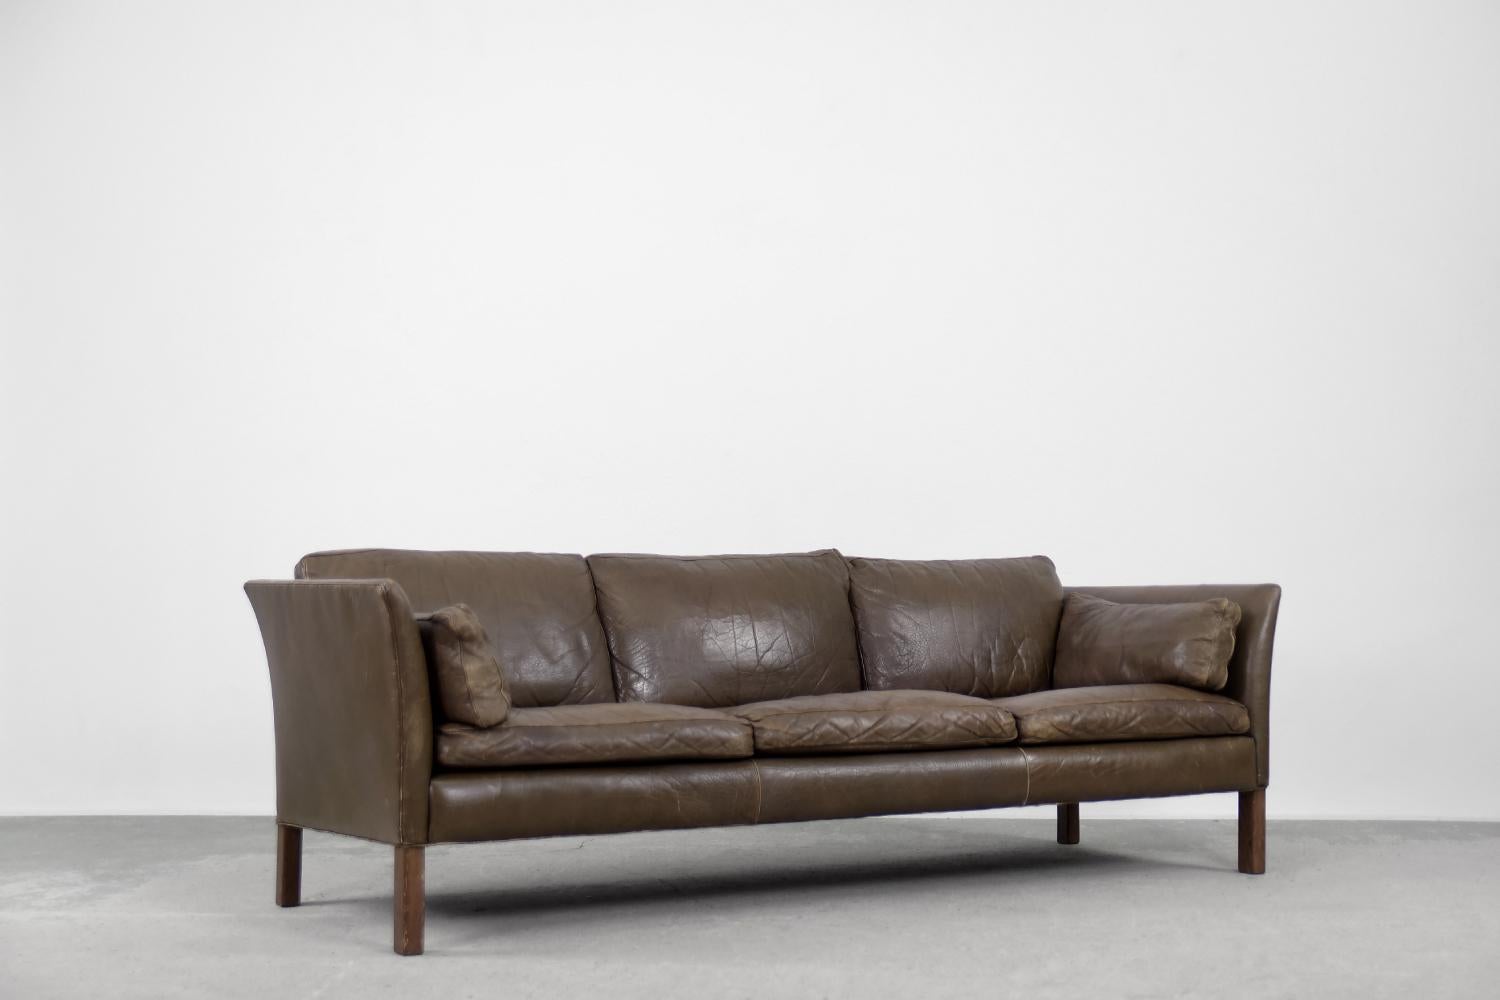 Dieses 3-sitzige Ledersofa Cromwell wurde in den 1960er Jahren von Arne Norell entworfen. Es ist ein zeitloses Design und heute noch genauso beliebt wie vor 60 Jahren, als es auf den Markt kam. Das Sofa ist mit hochwertigem Naturleder in erdigen